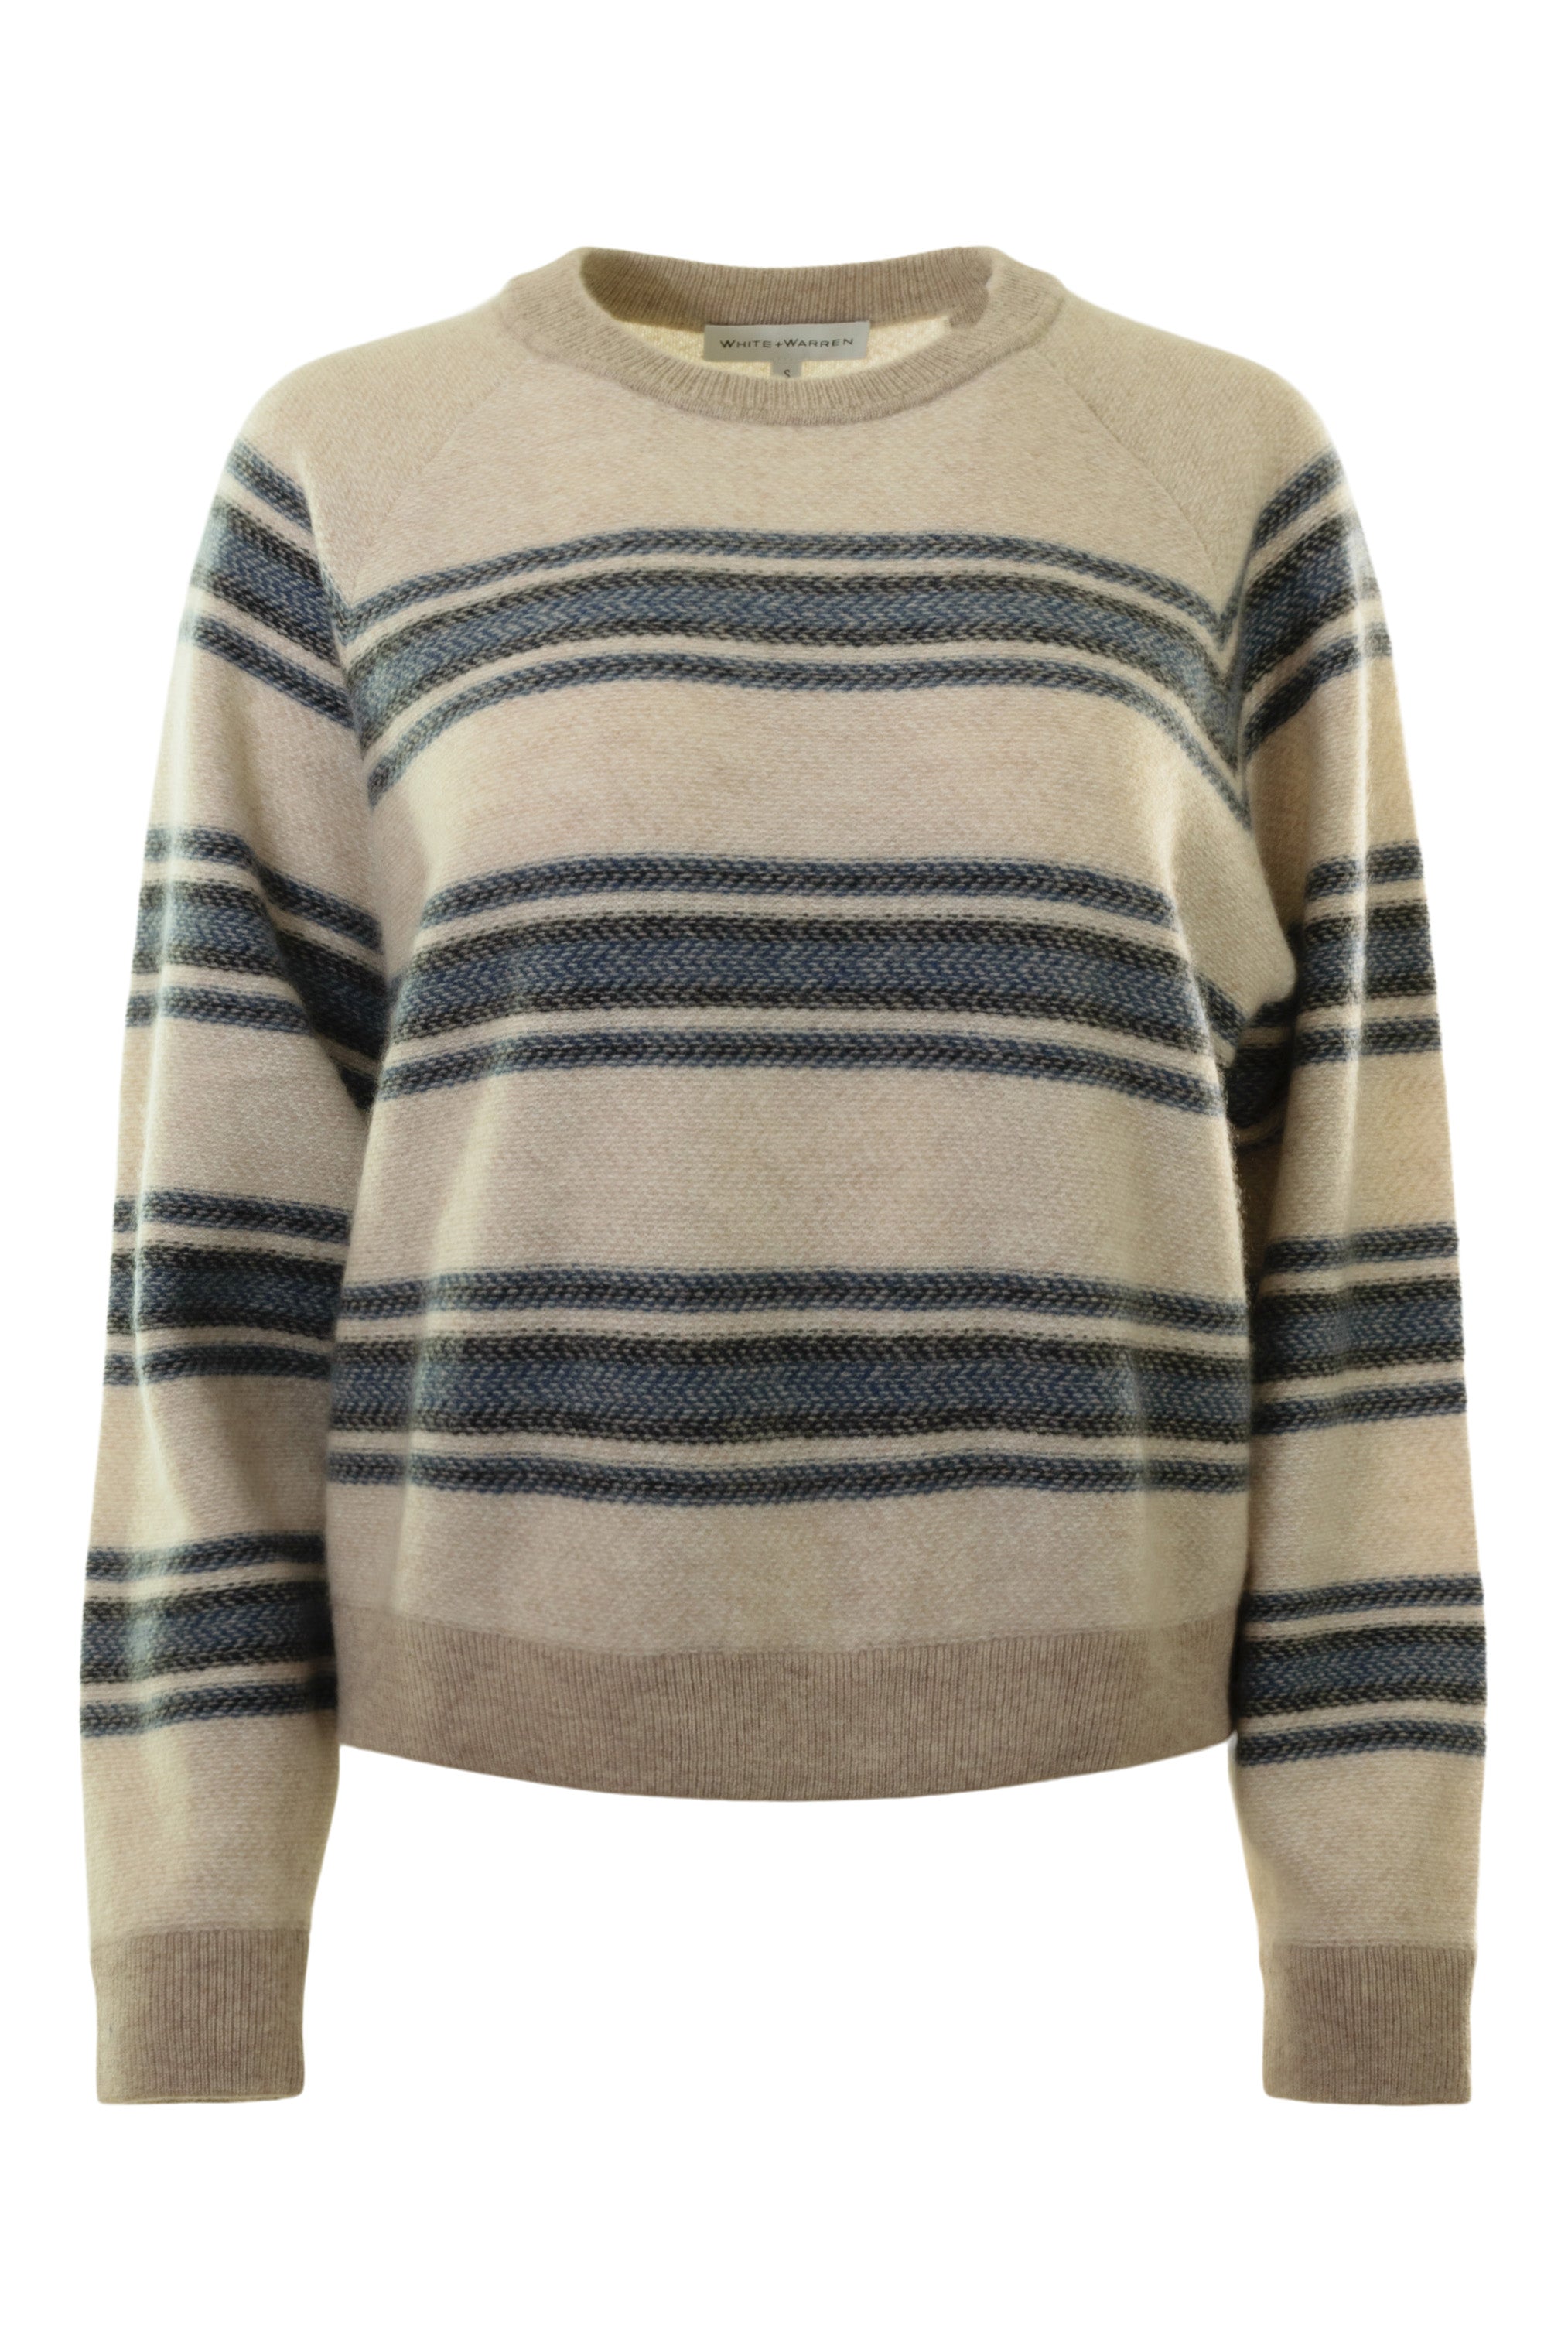 White & Warren Cashmere Blanket Stripe Sweater